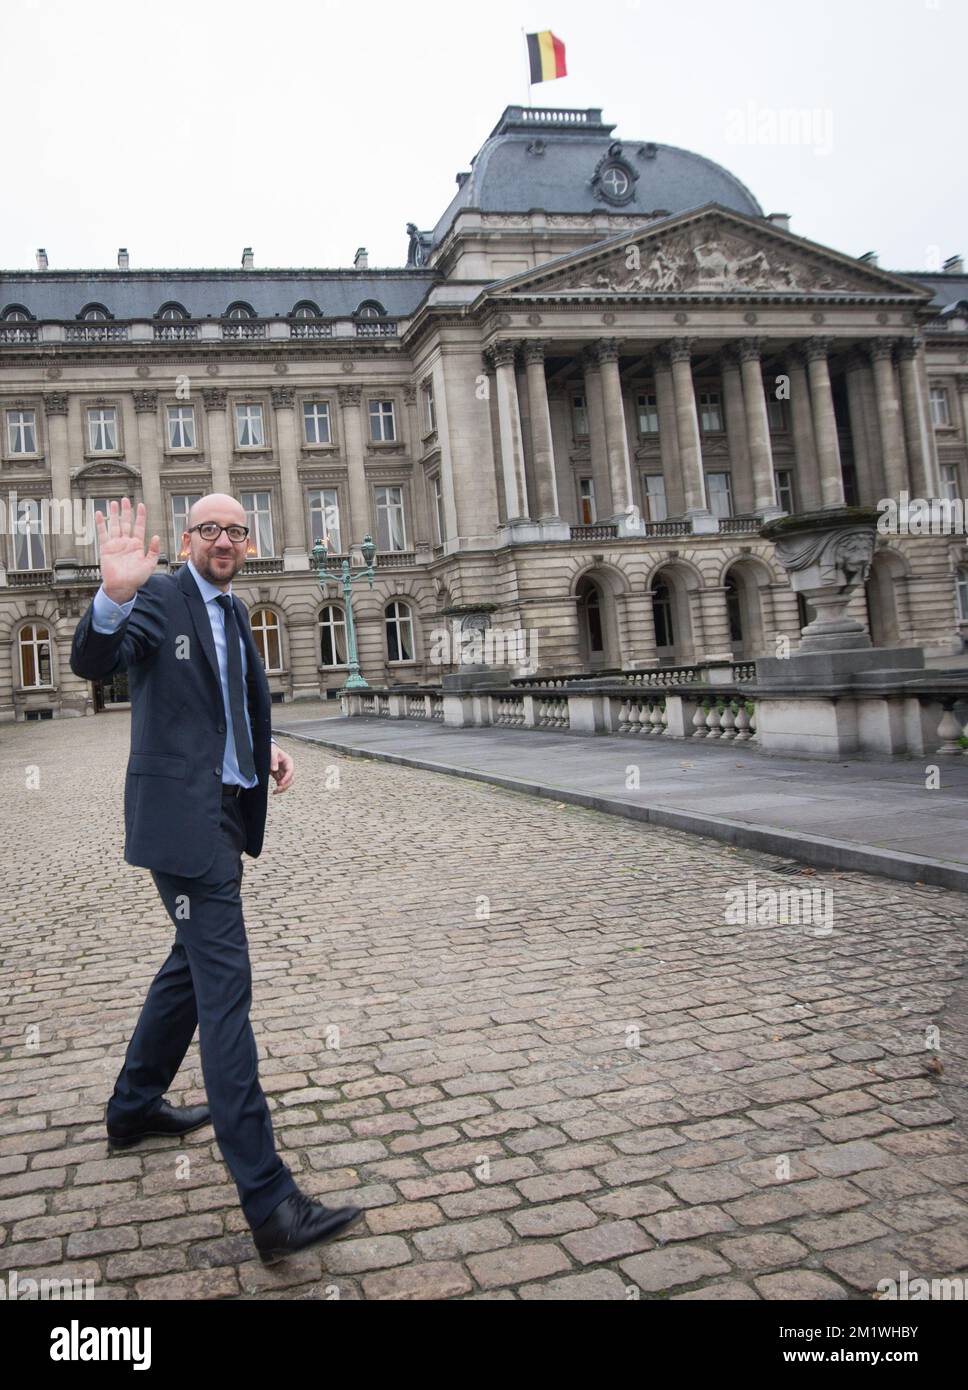 20141008 - BRUXELLES, BELGIQUE : le co-formateur MR Charles Michel arrive au Palais Royal de Bruxelles, le mercredi 08 octobre 2014, avec les co-formateurs Kris Peeters (CD&V) et Charles Michel (MR). Hier soir, après une réunion de 28 heures, les négociateurs sont arrivés à un accord pour un nouveau gouvernement, la coalition suédoise avec MR, CD&V, N-va et Open VLD, une coalition de centre-droit. BELGA PHOTO BENOIT DOPPAGNE Banque D'Images